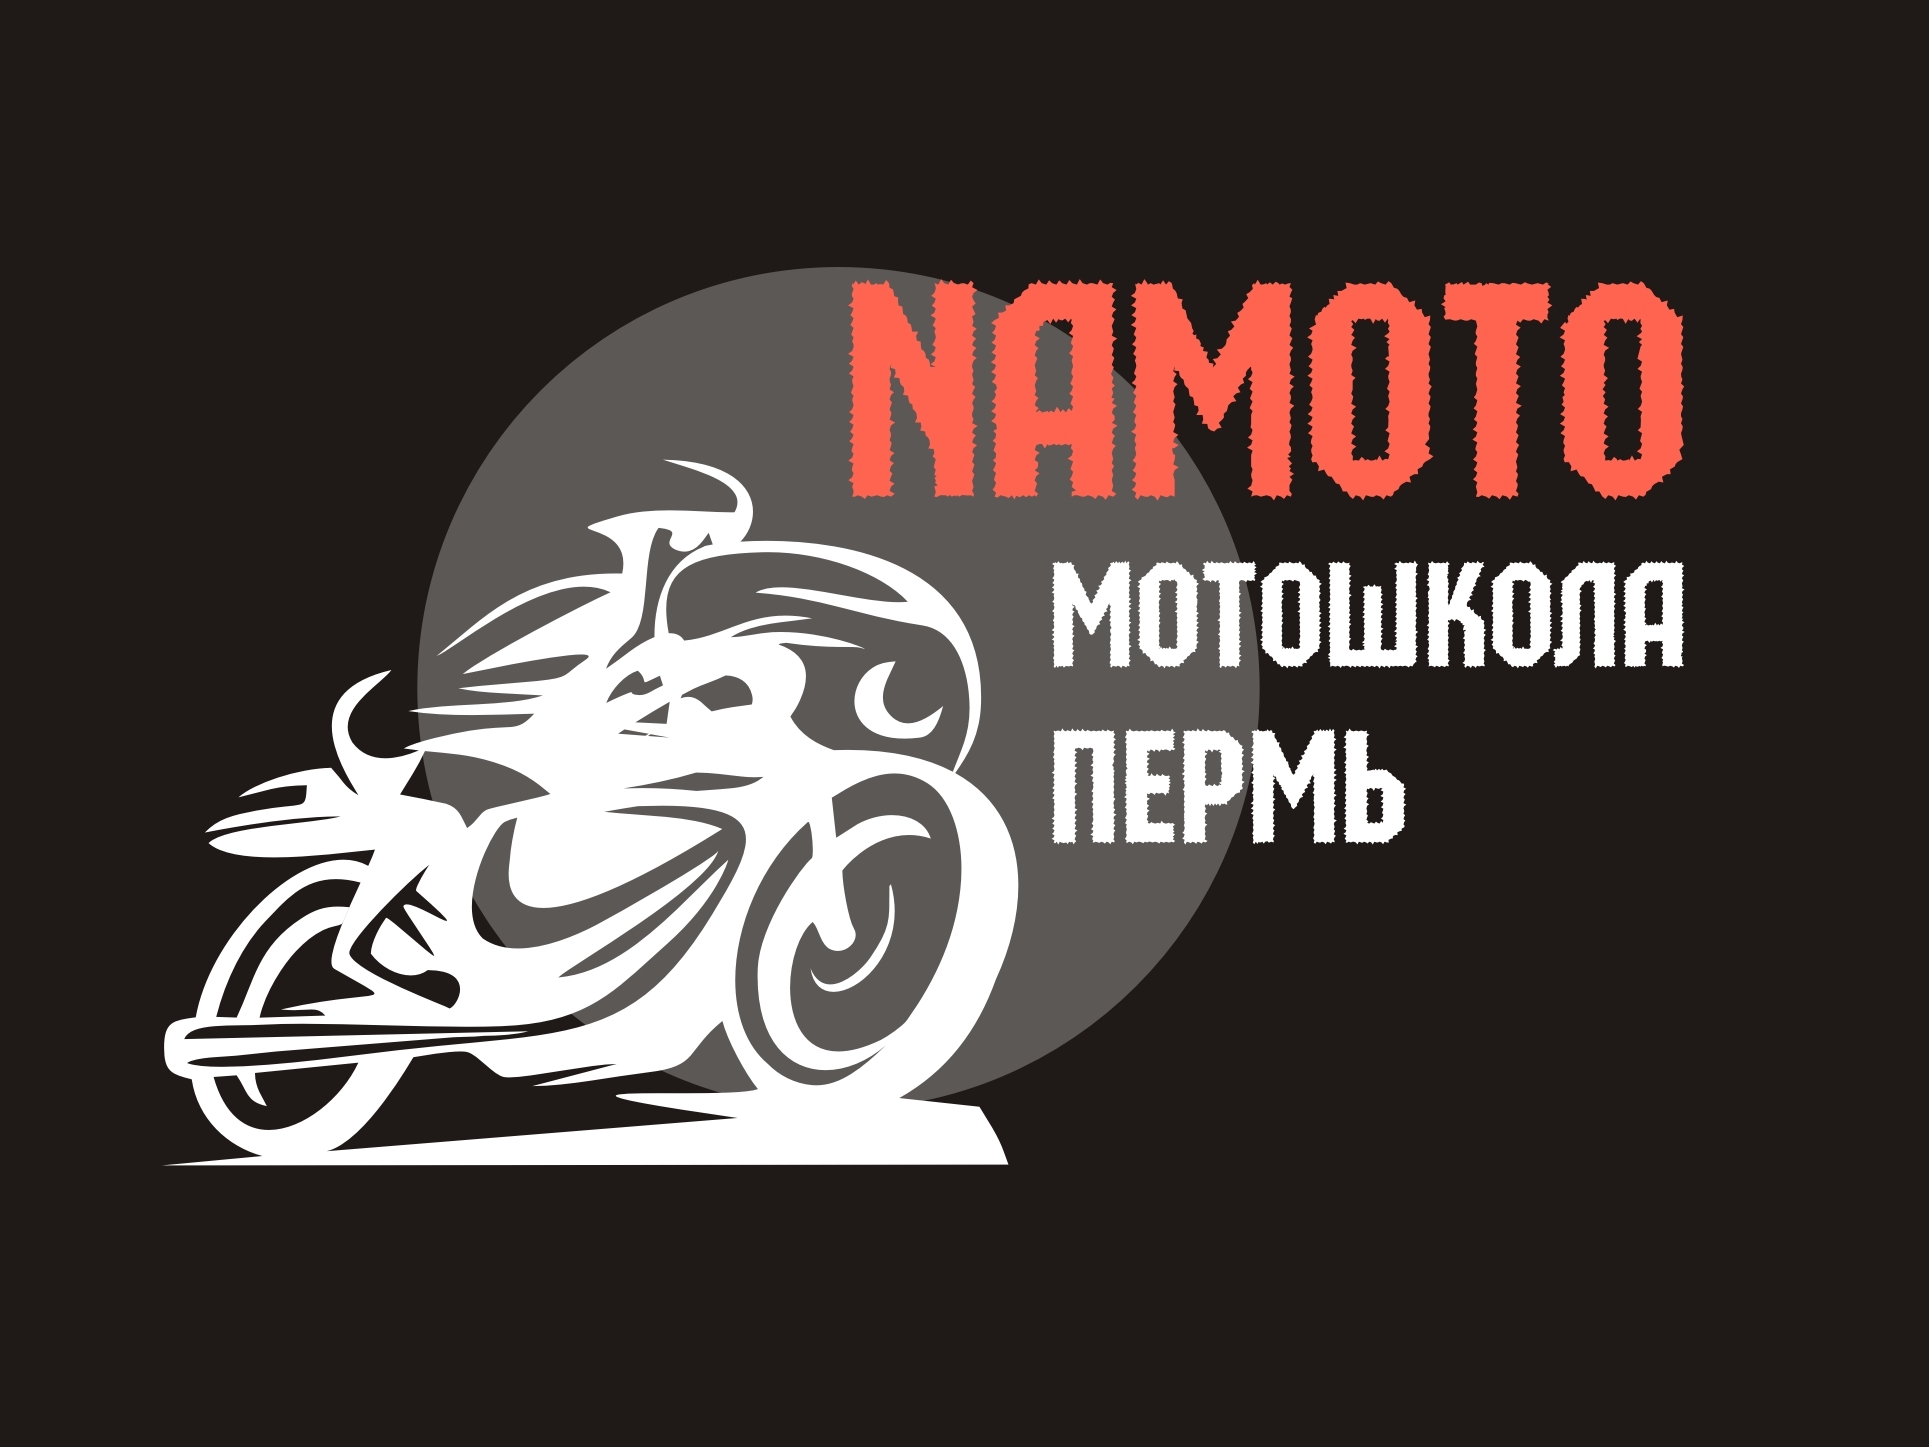 Логотип Мотошкола Namoto